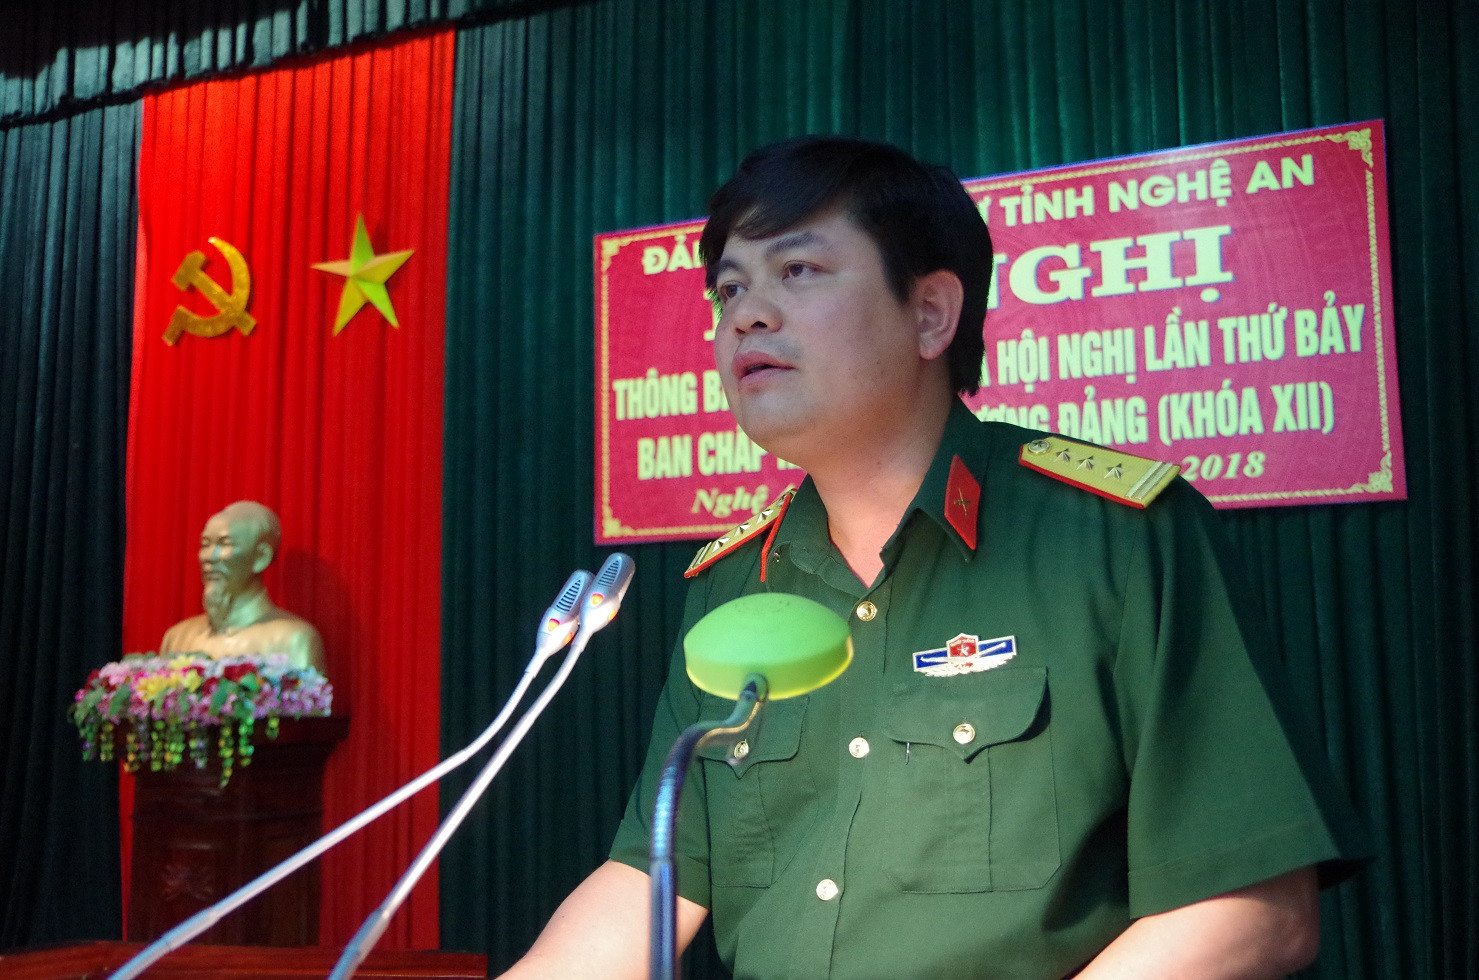 Thượng tá Thái Đức Hạnh - Phó Bí thư Đảng ủy Quân sự, Chính ủy Bộ CHQS tỉnh Nghệ An chủ trì hội nghị.